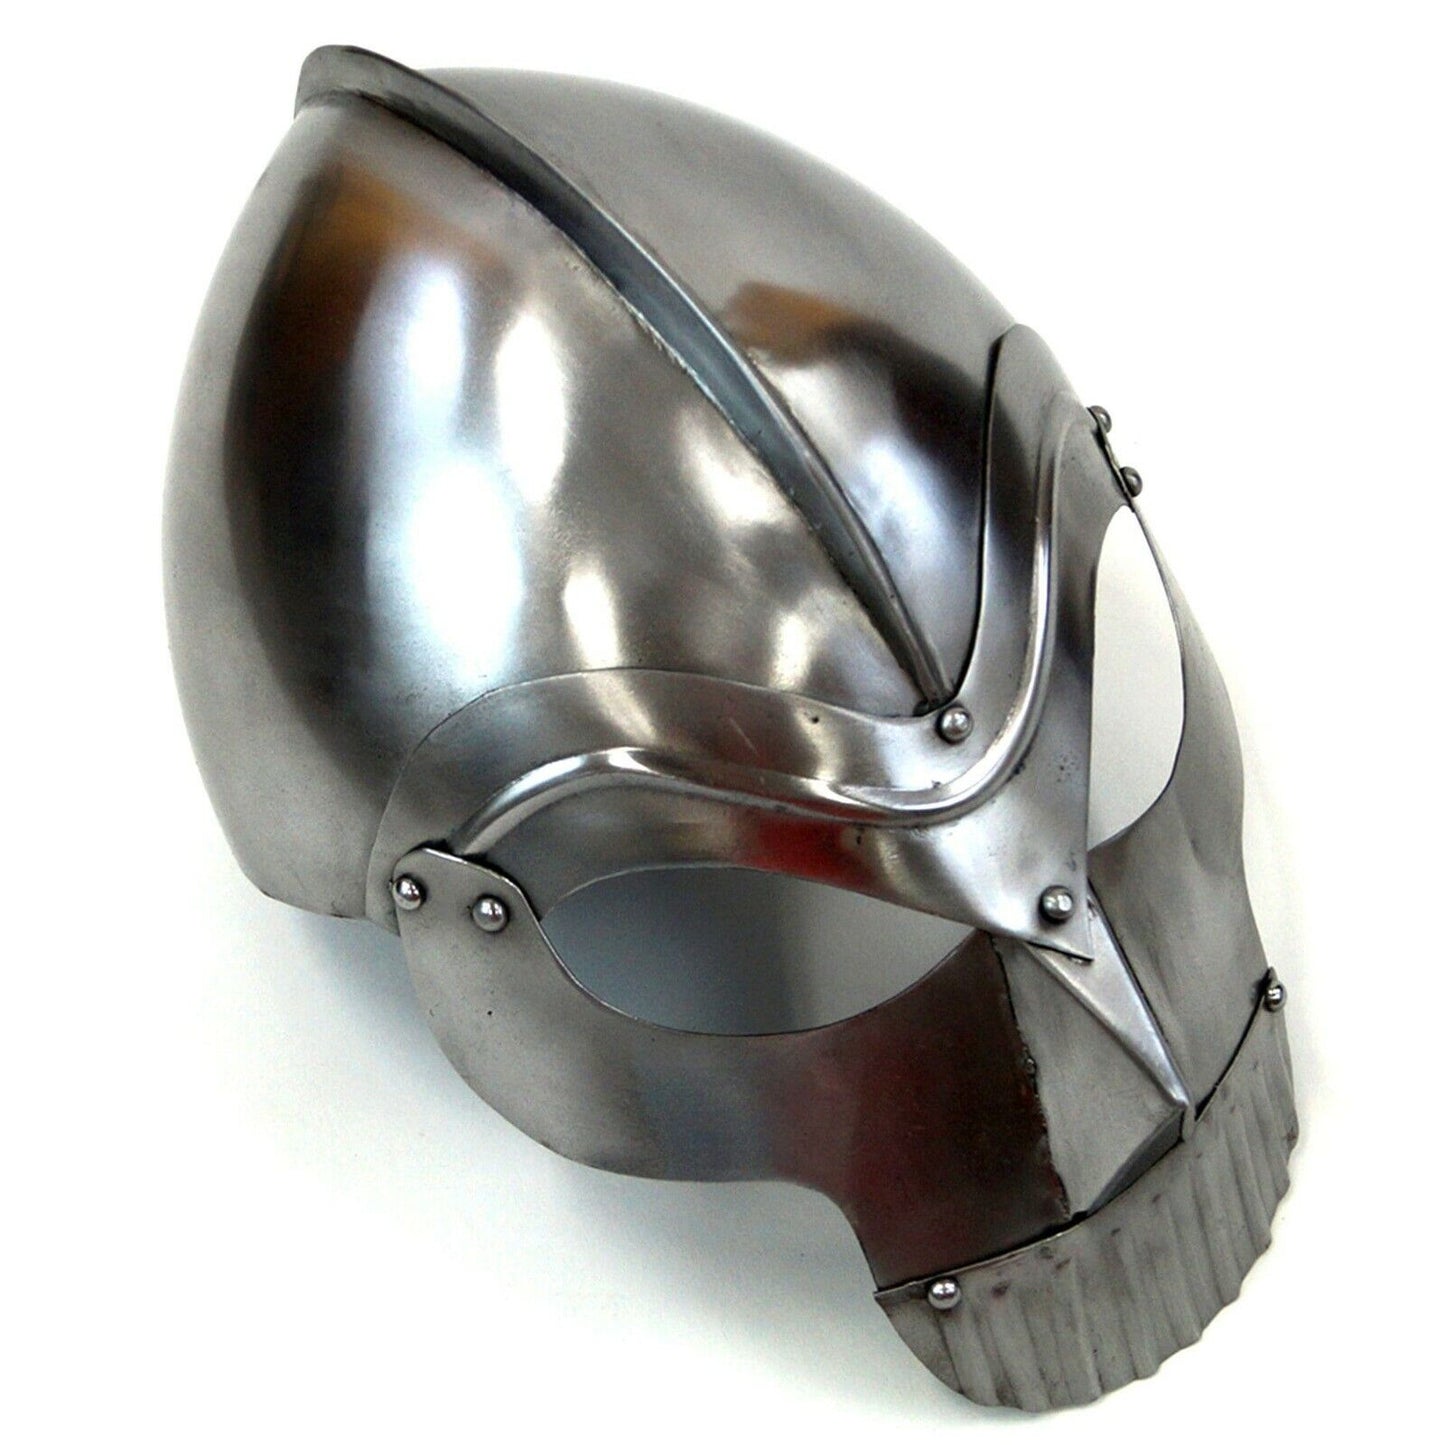 Armor Helmet with Teeth Medieval Warrior Armor, Chrome (19851)